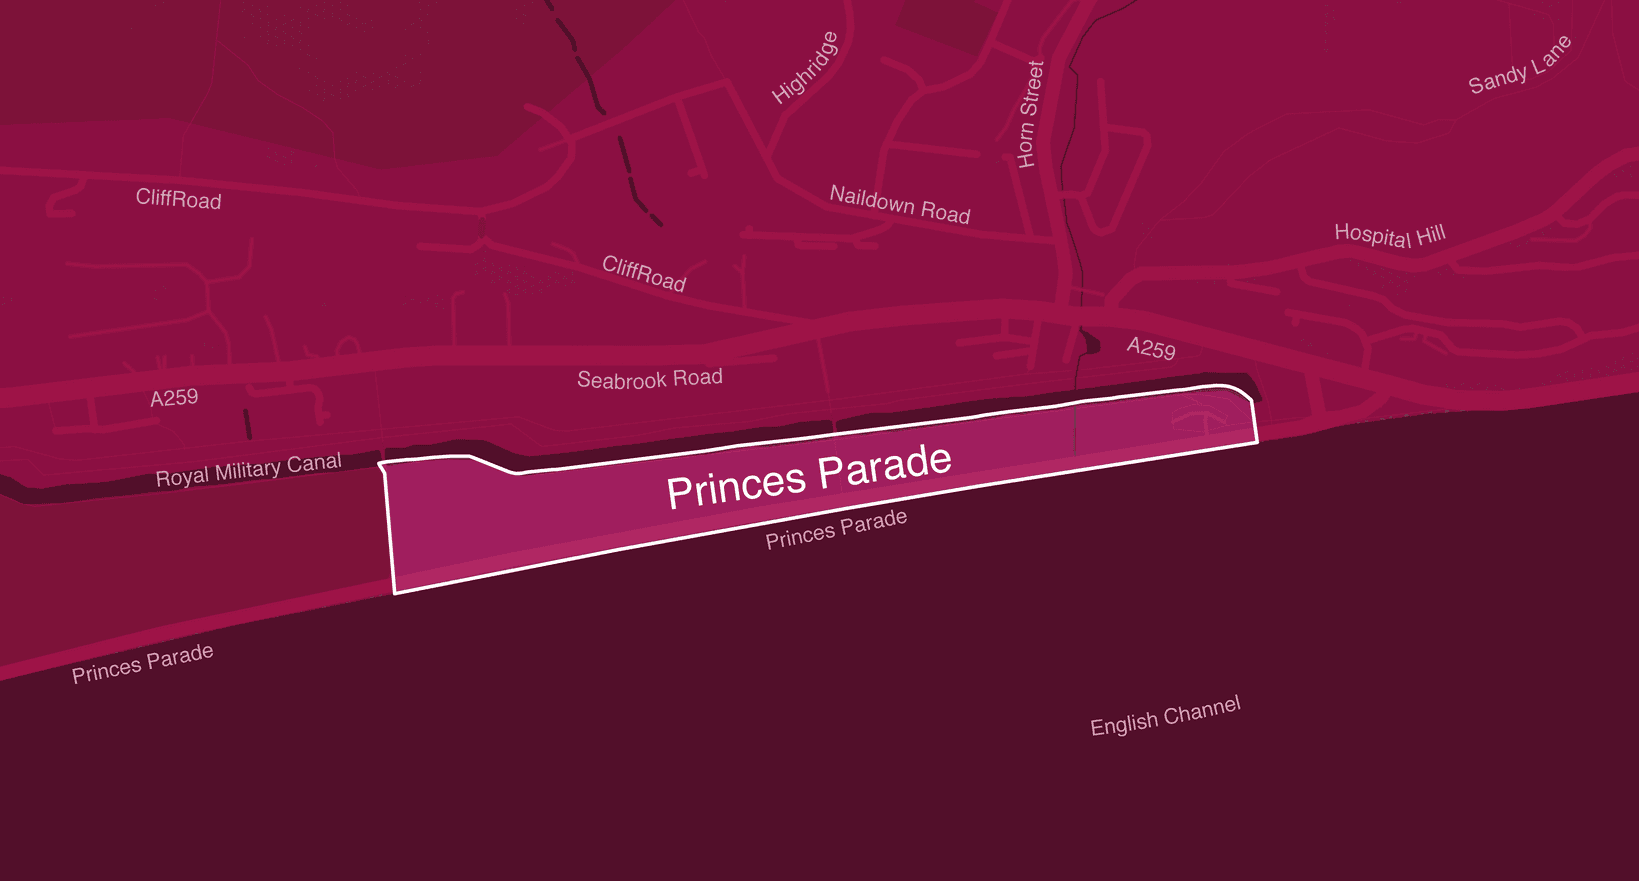 5612 Princes Parade Folkestone 1400px by 752px 01